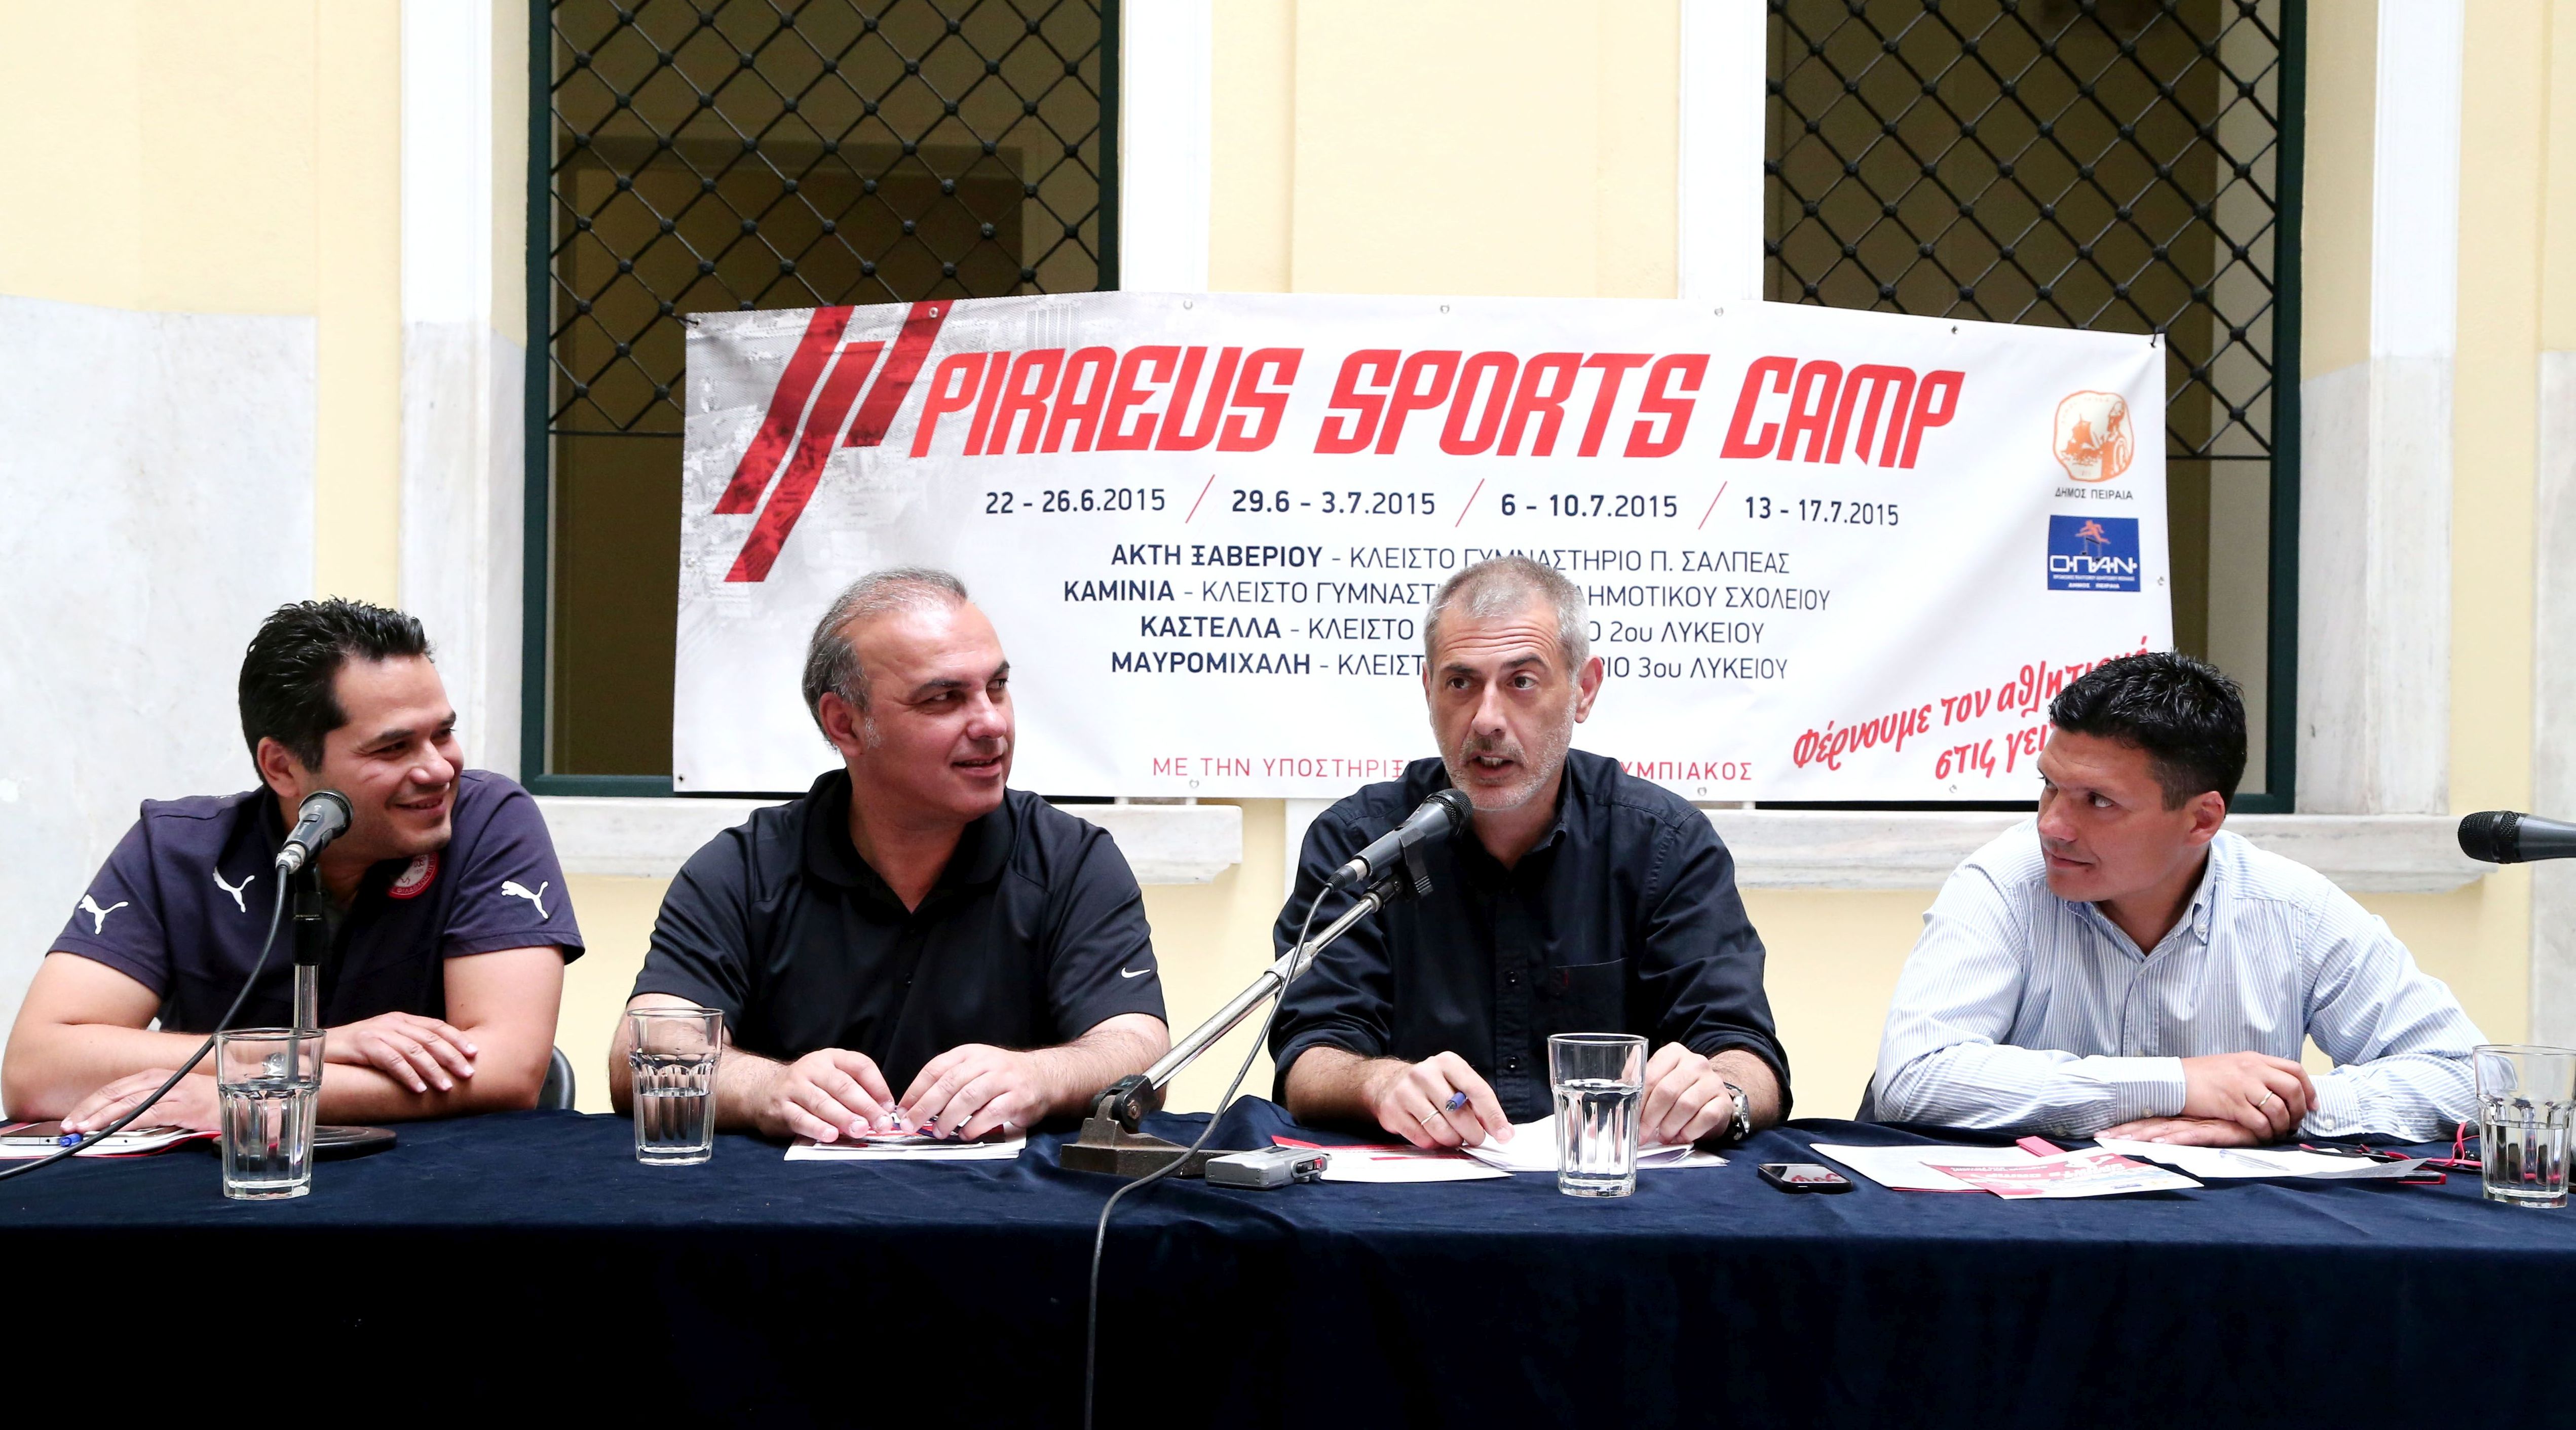 Παρουσιάστηκε τo Piraeus Sports Camp 2015